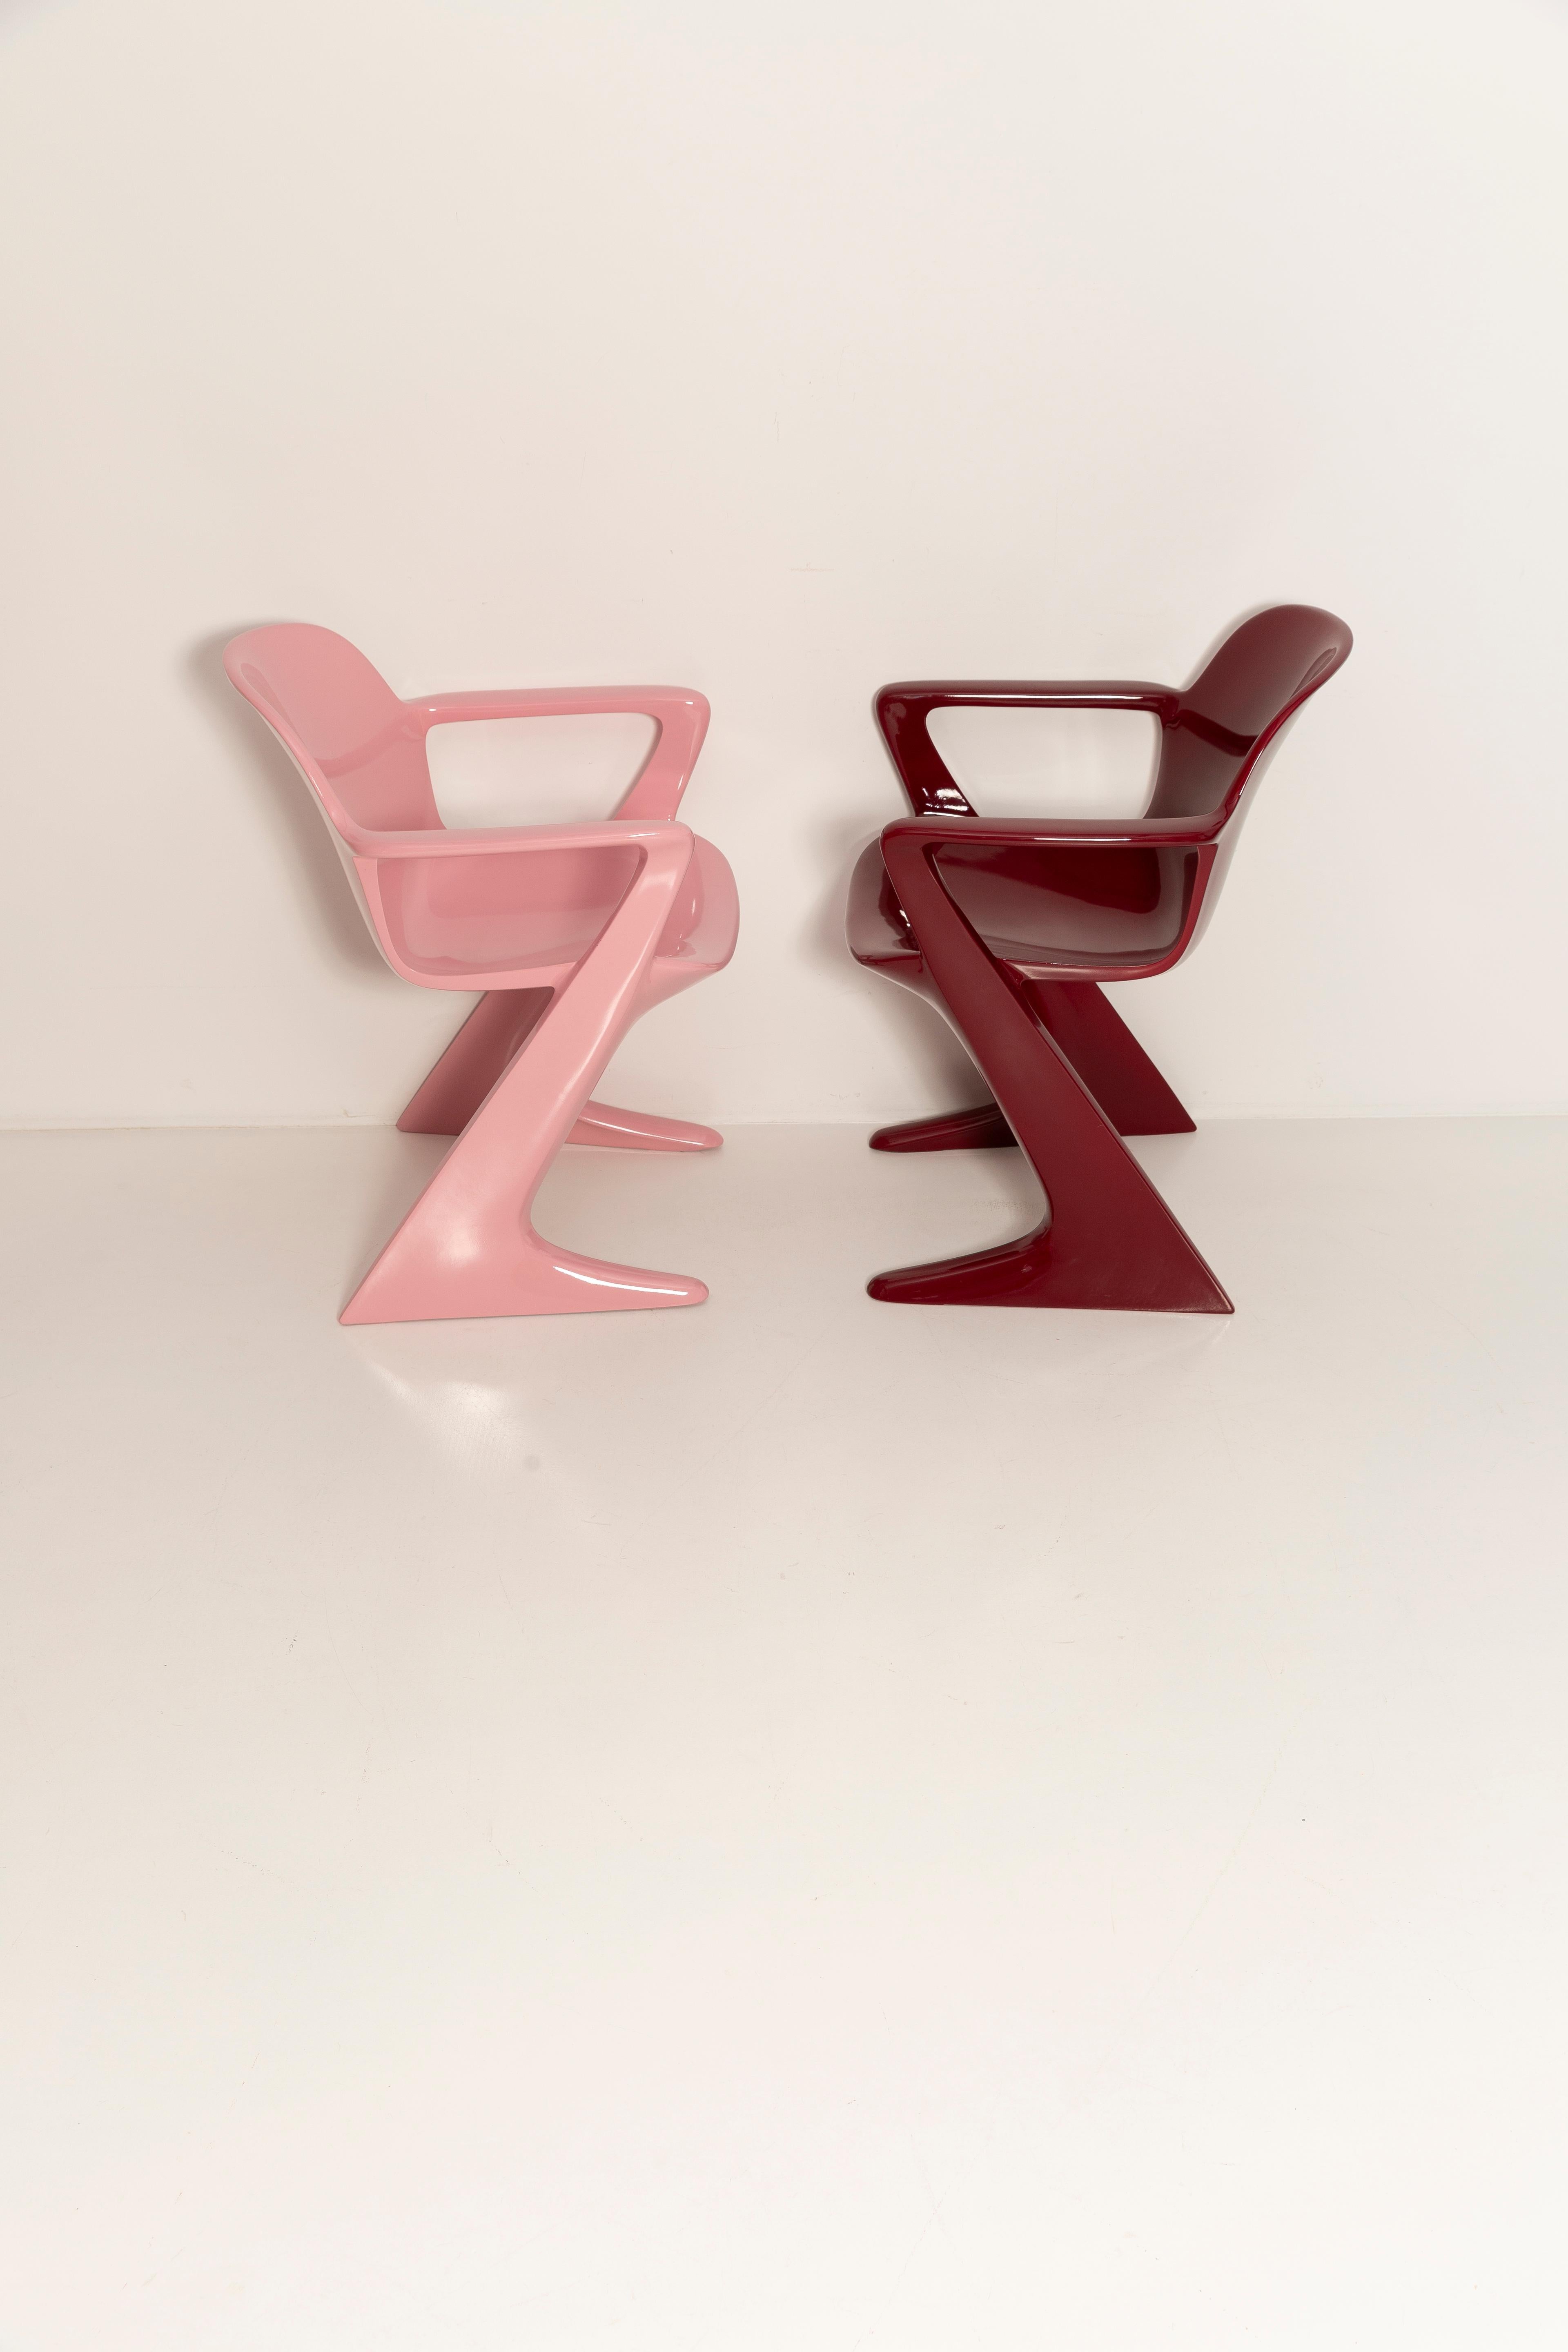 Der z.stuhl, entworfen von Ernst Moeckl (1931-2013) in den 1970er Jahren, ist ein Freischwinger aus Polyurethan, der mit und ohne Armlehnen erhältlich ist. Im Volksmund ist der Stuhl unter seinen geometriebezogenen Namen wie 